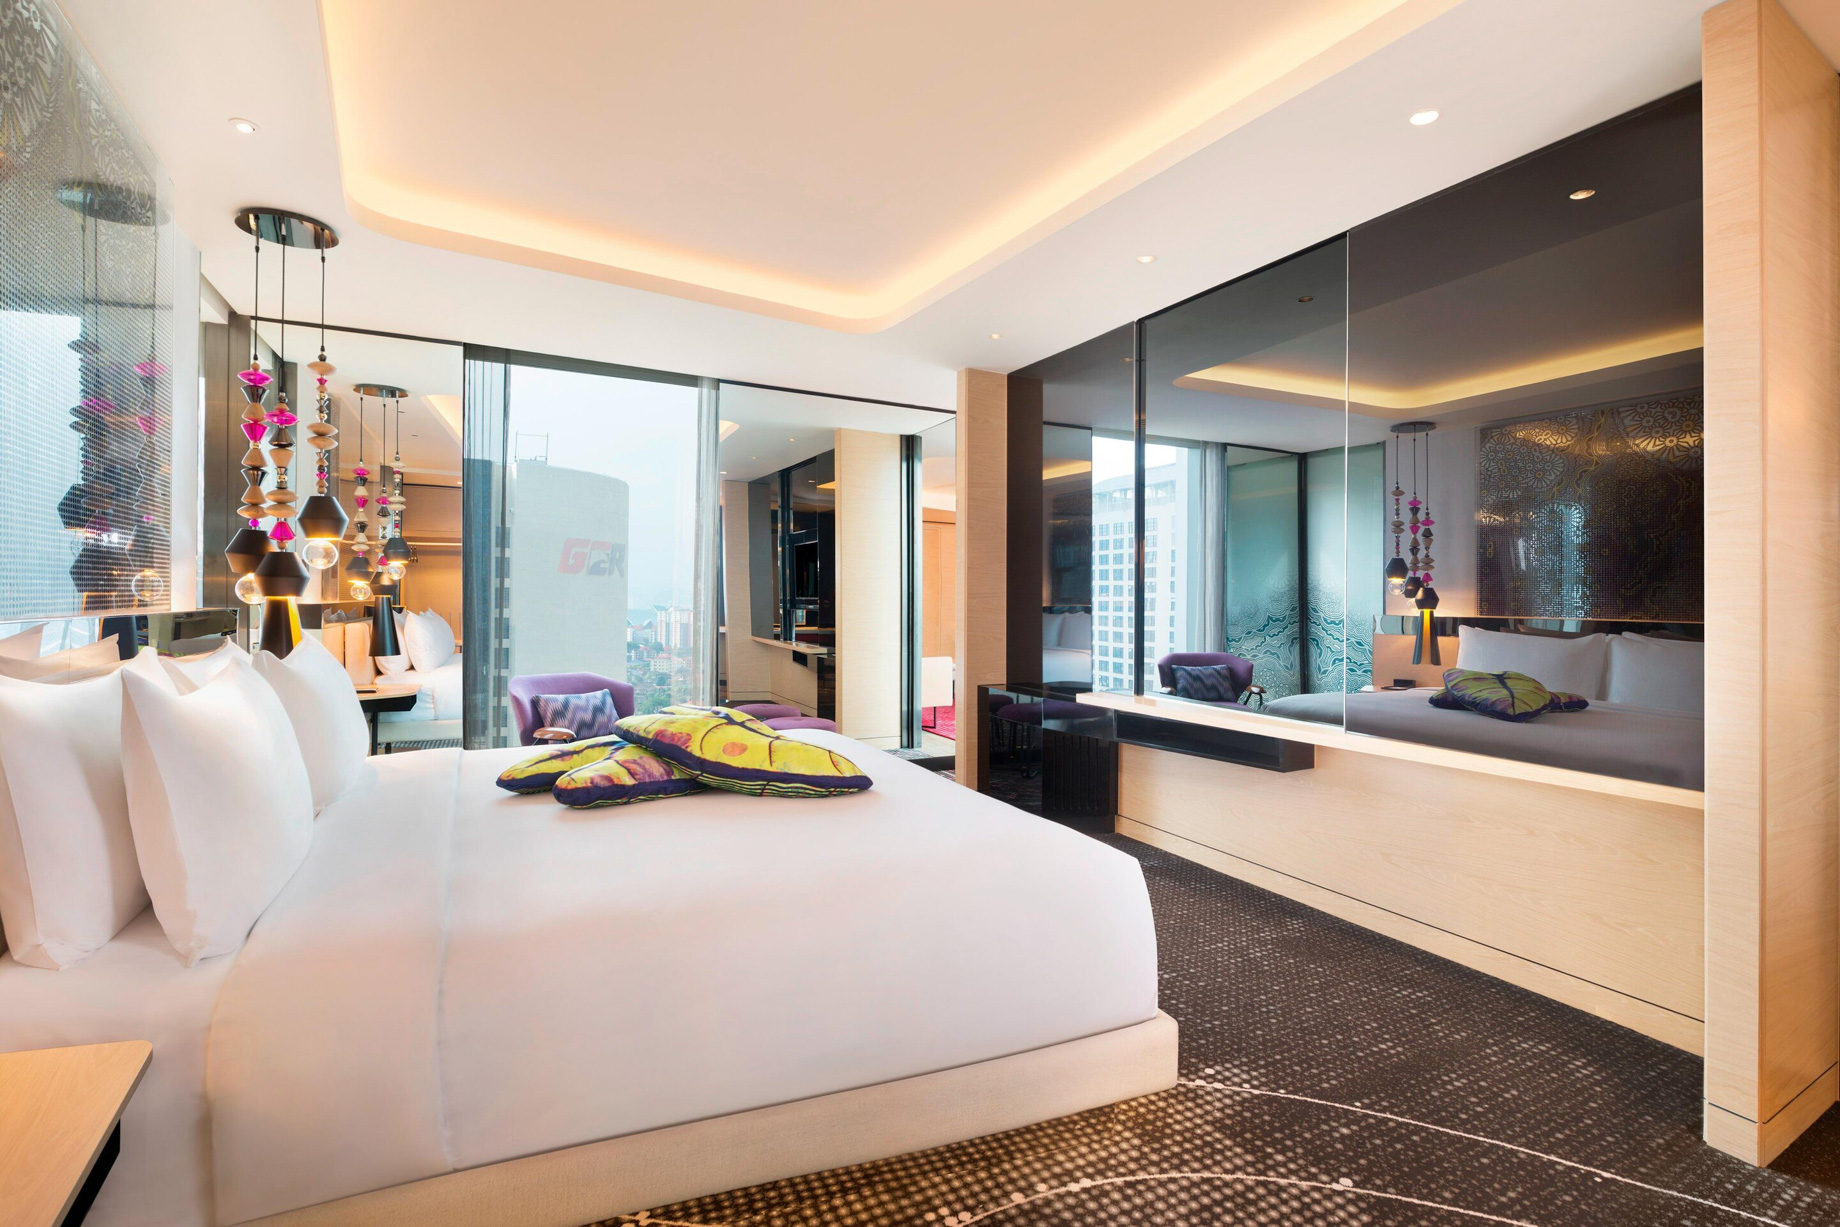 W Kuala Lumpur Hotel – Kuala Lumpur, Malaysia – Studio Suite Bedroom